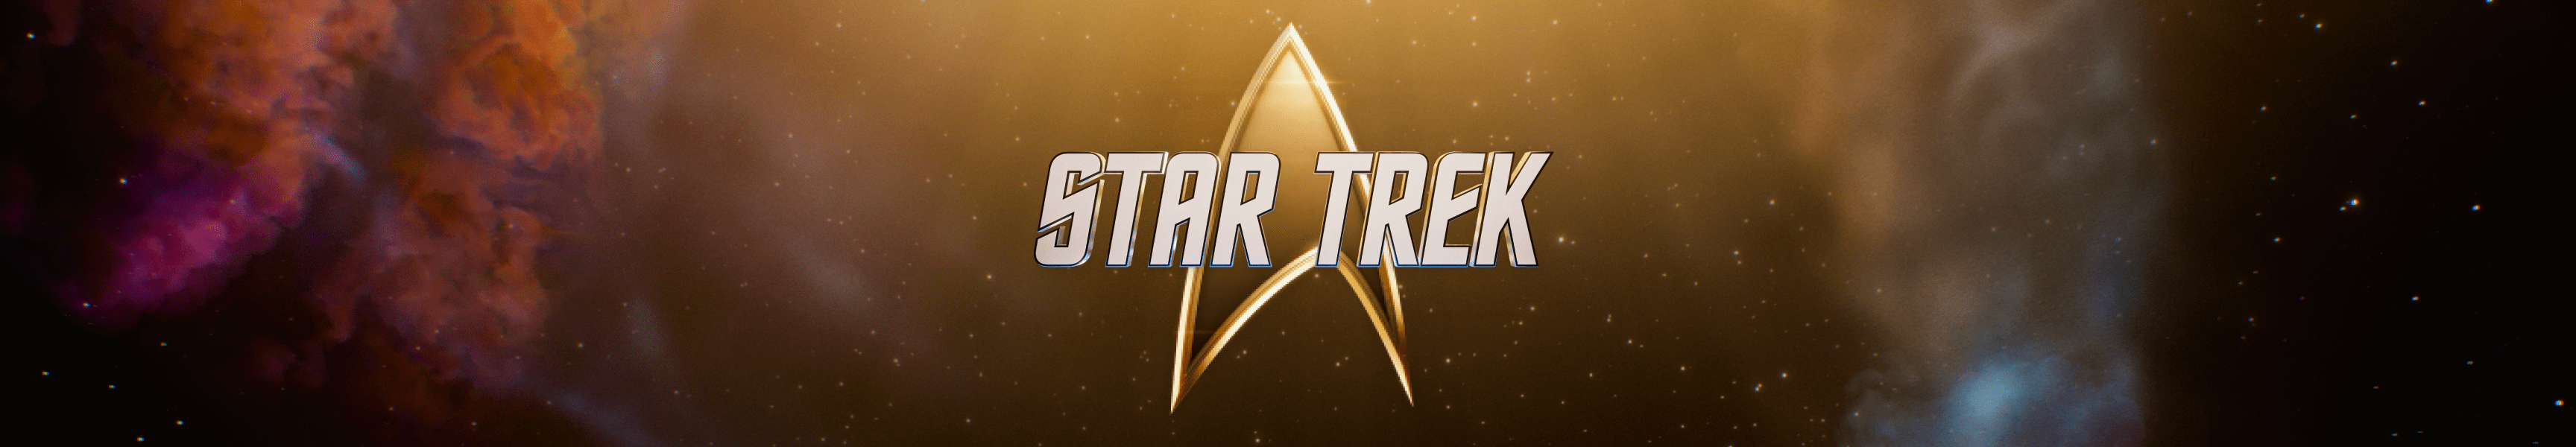 Star Trek barcos de la línea